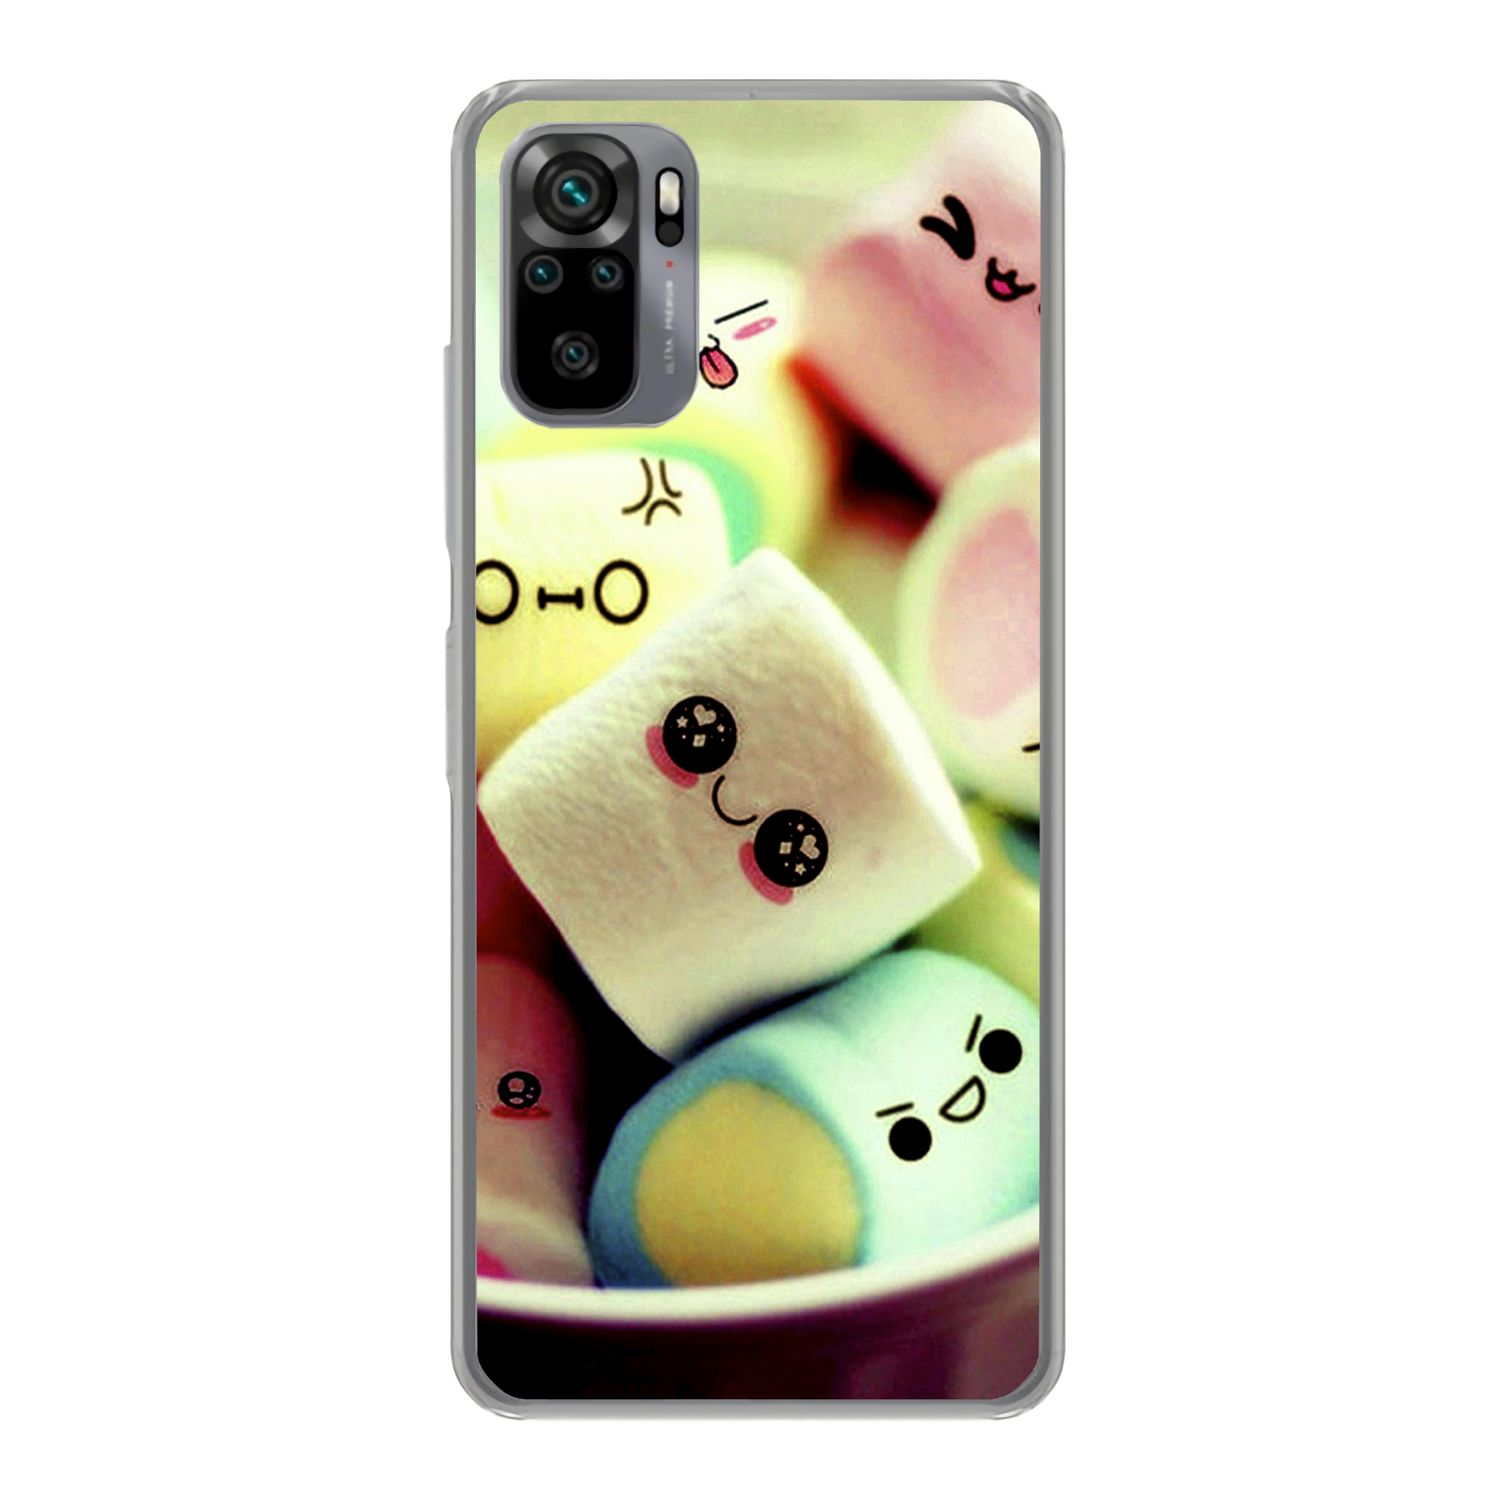 Backcover, Note Xiaomi, 10S, Redmi KÖNIG DESIGN Marshmallows Case,